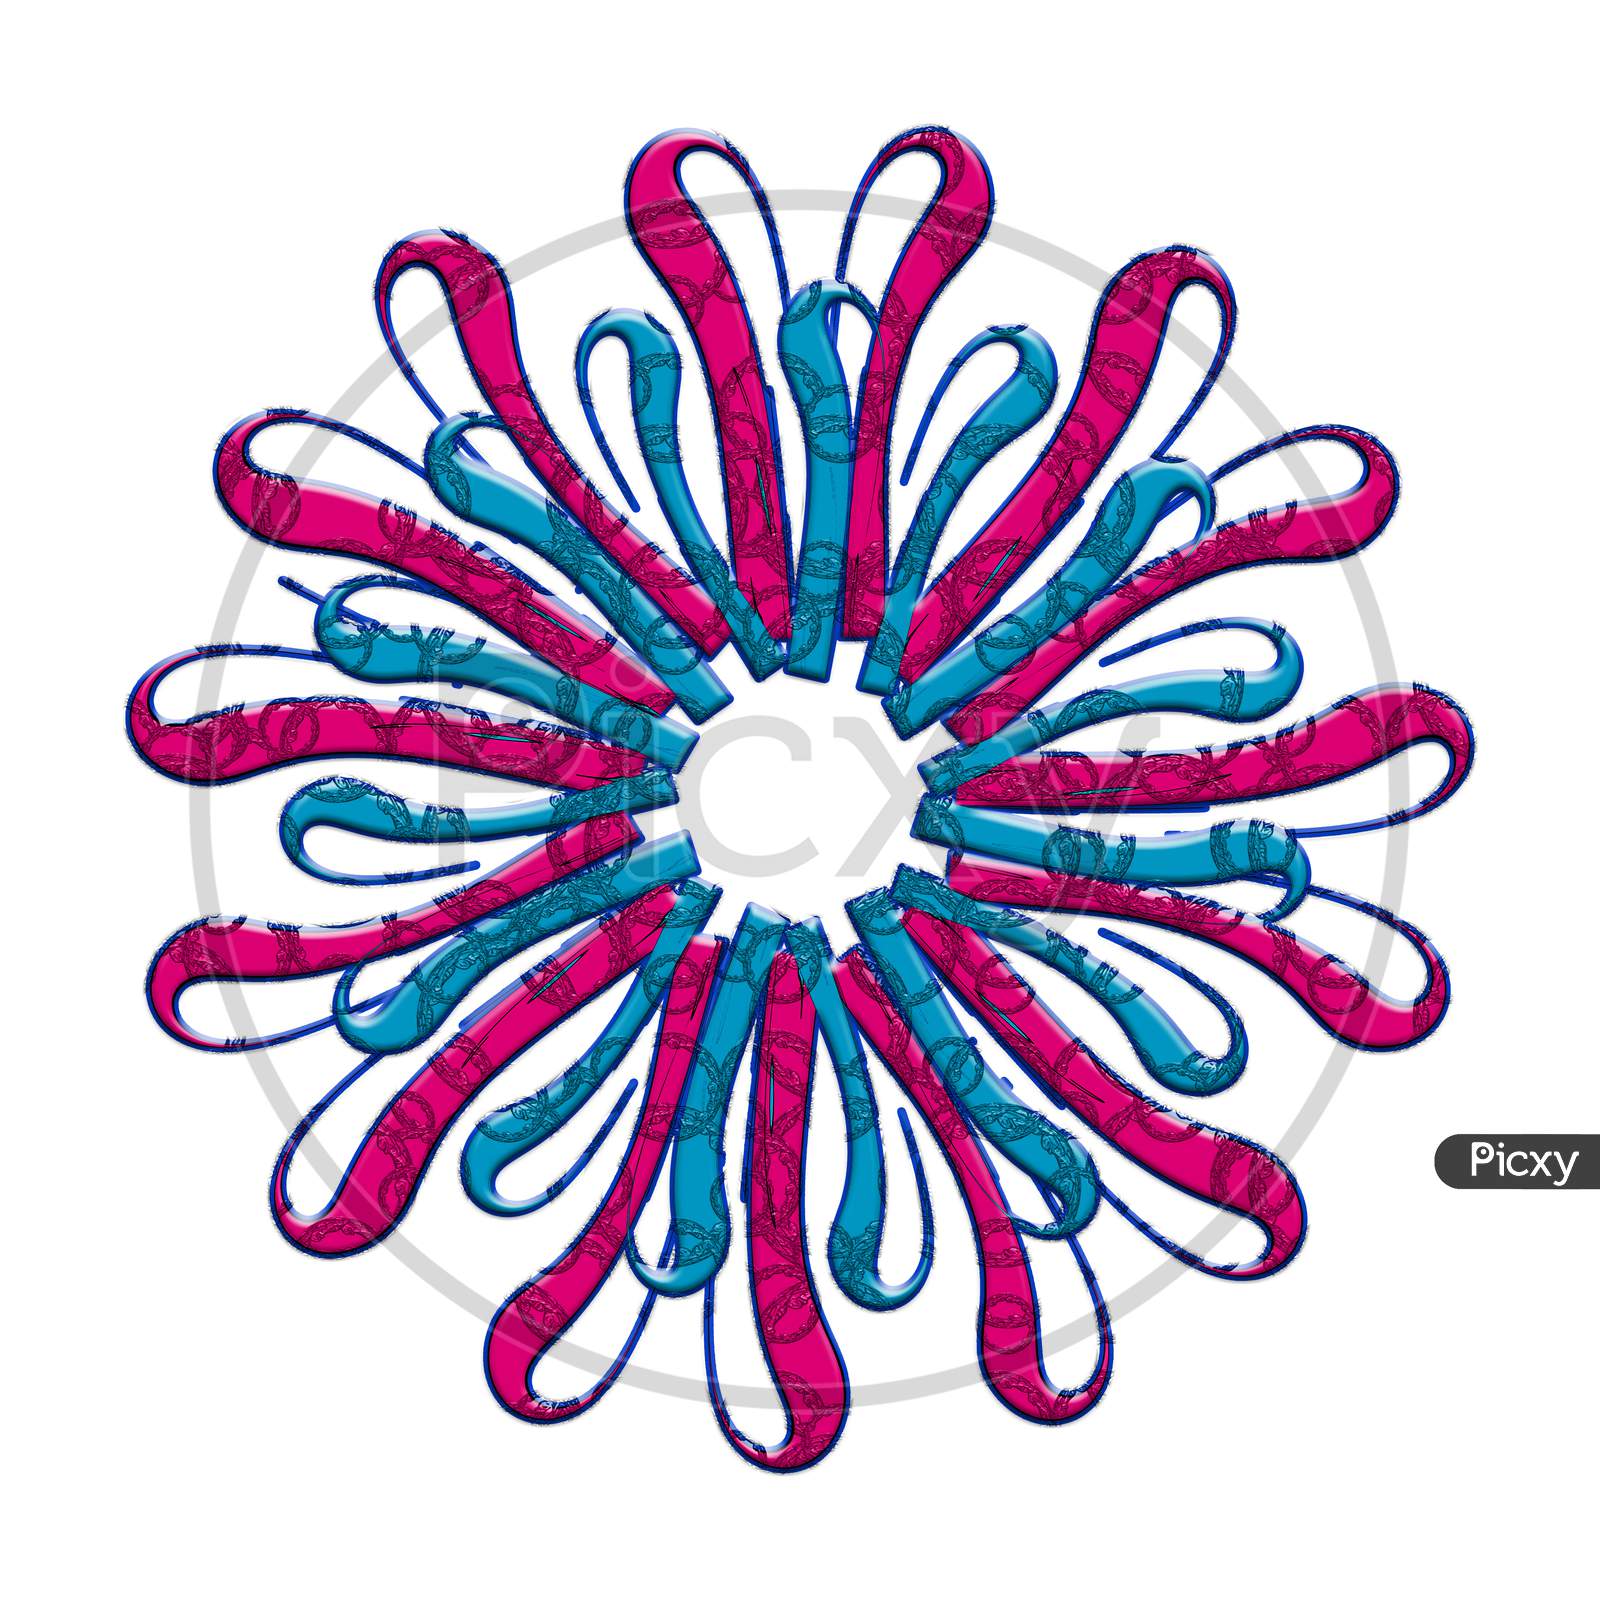 3D Textured Mandala Shape Flower And Texture